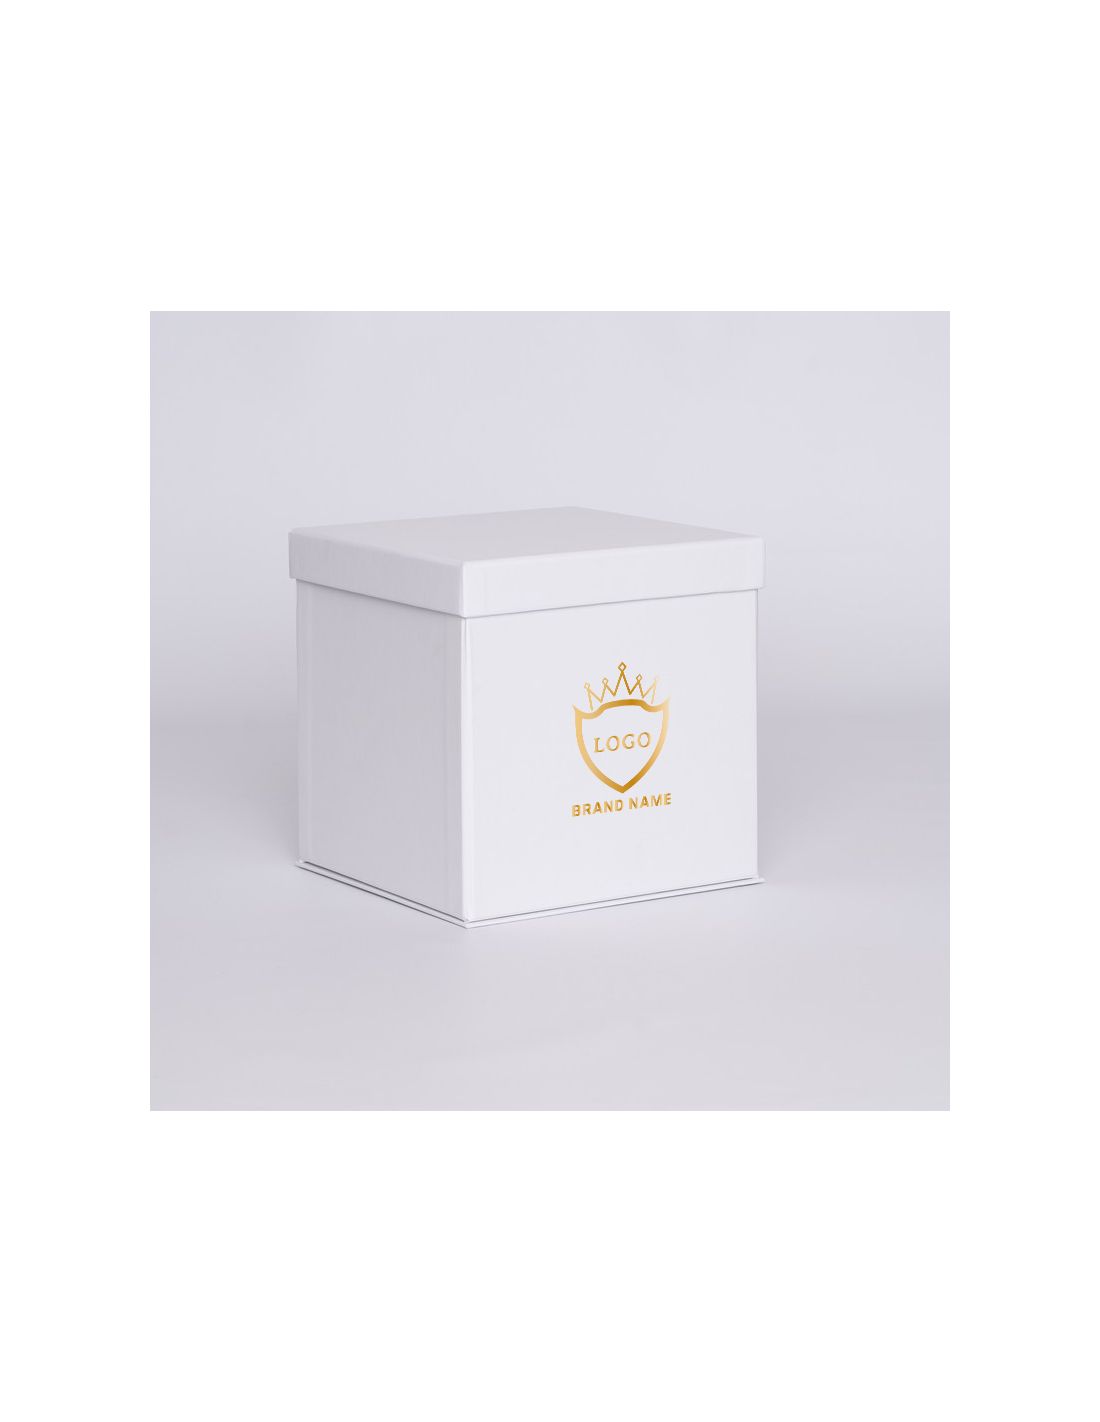 Gepersonaliseerde Gepersonaliseerde doos met deksel Flowerbox 18x18x18 CM | FLOWERBOX |WARMTEDRUK | CENTURYPRINT